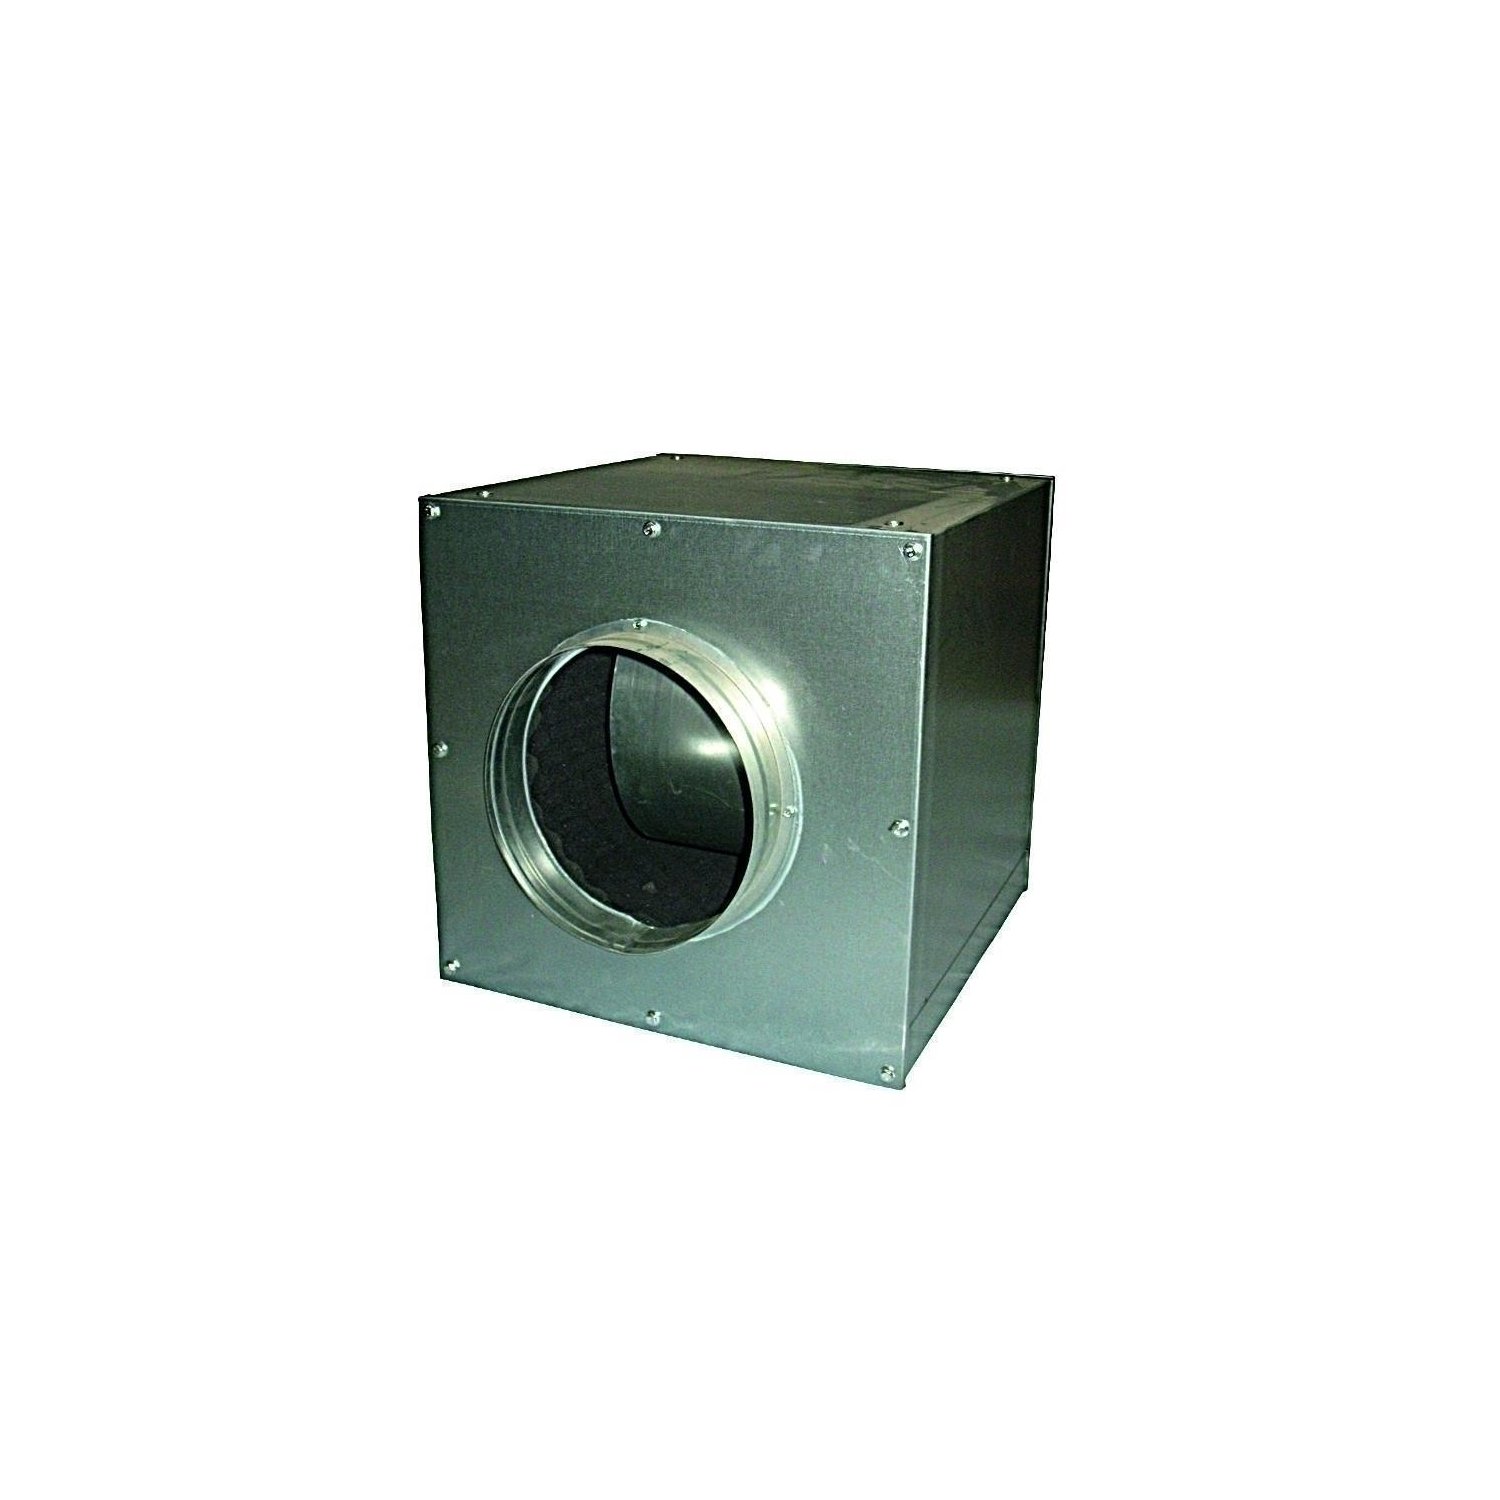 Cultivalley AC Lüfterbox 7000m-h aufgehangen Metall unter Luft & Wasser > Lüftung > Lüfter